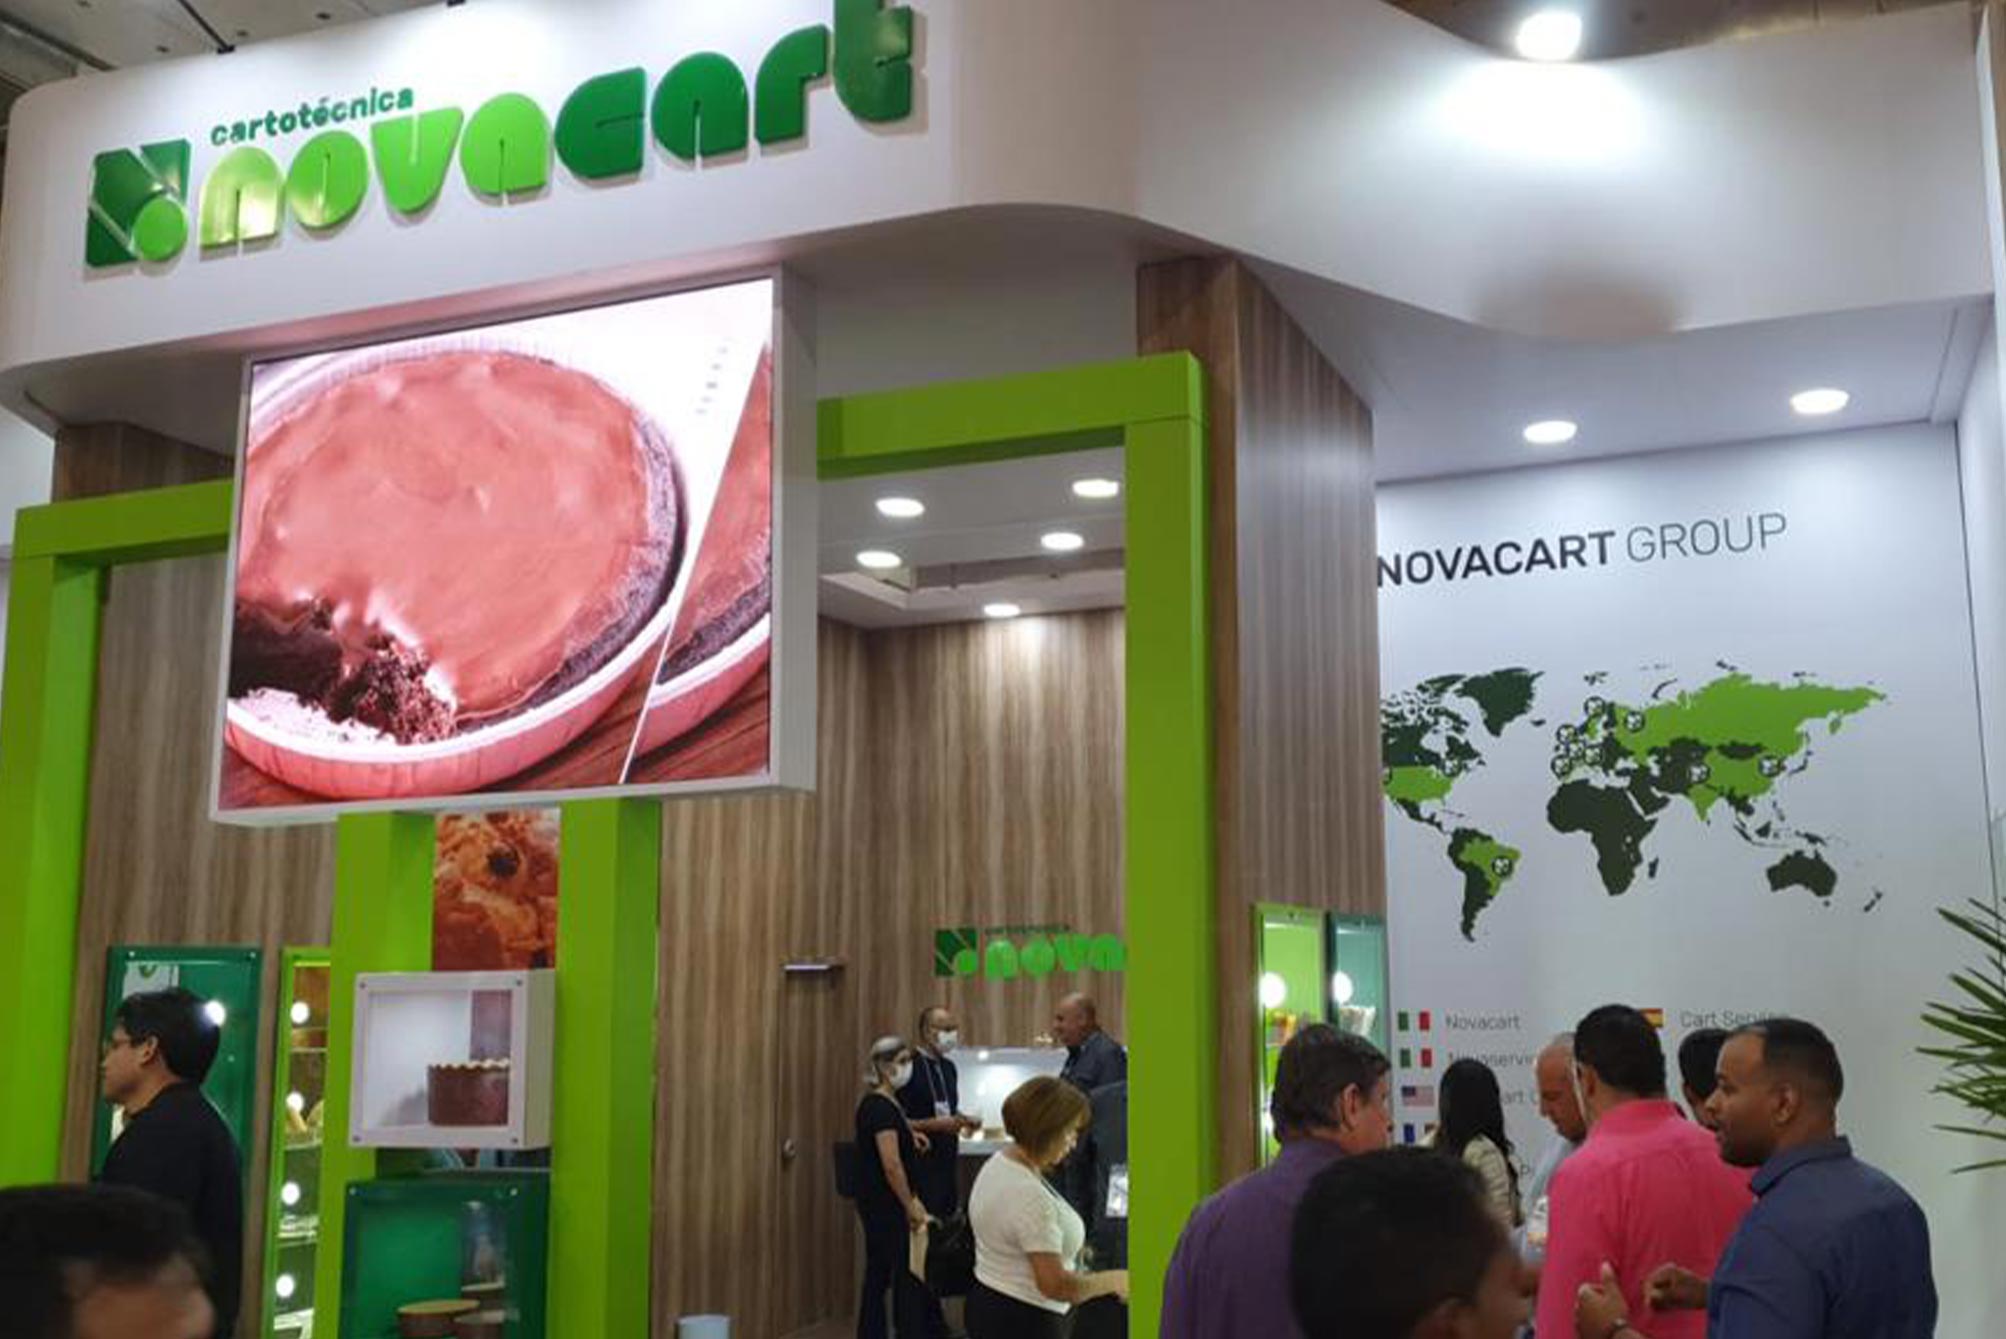 Novacart Brazil stand at Fipan fair